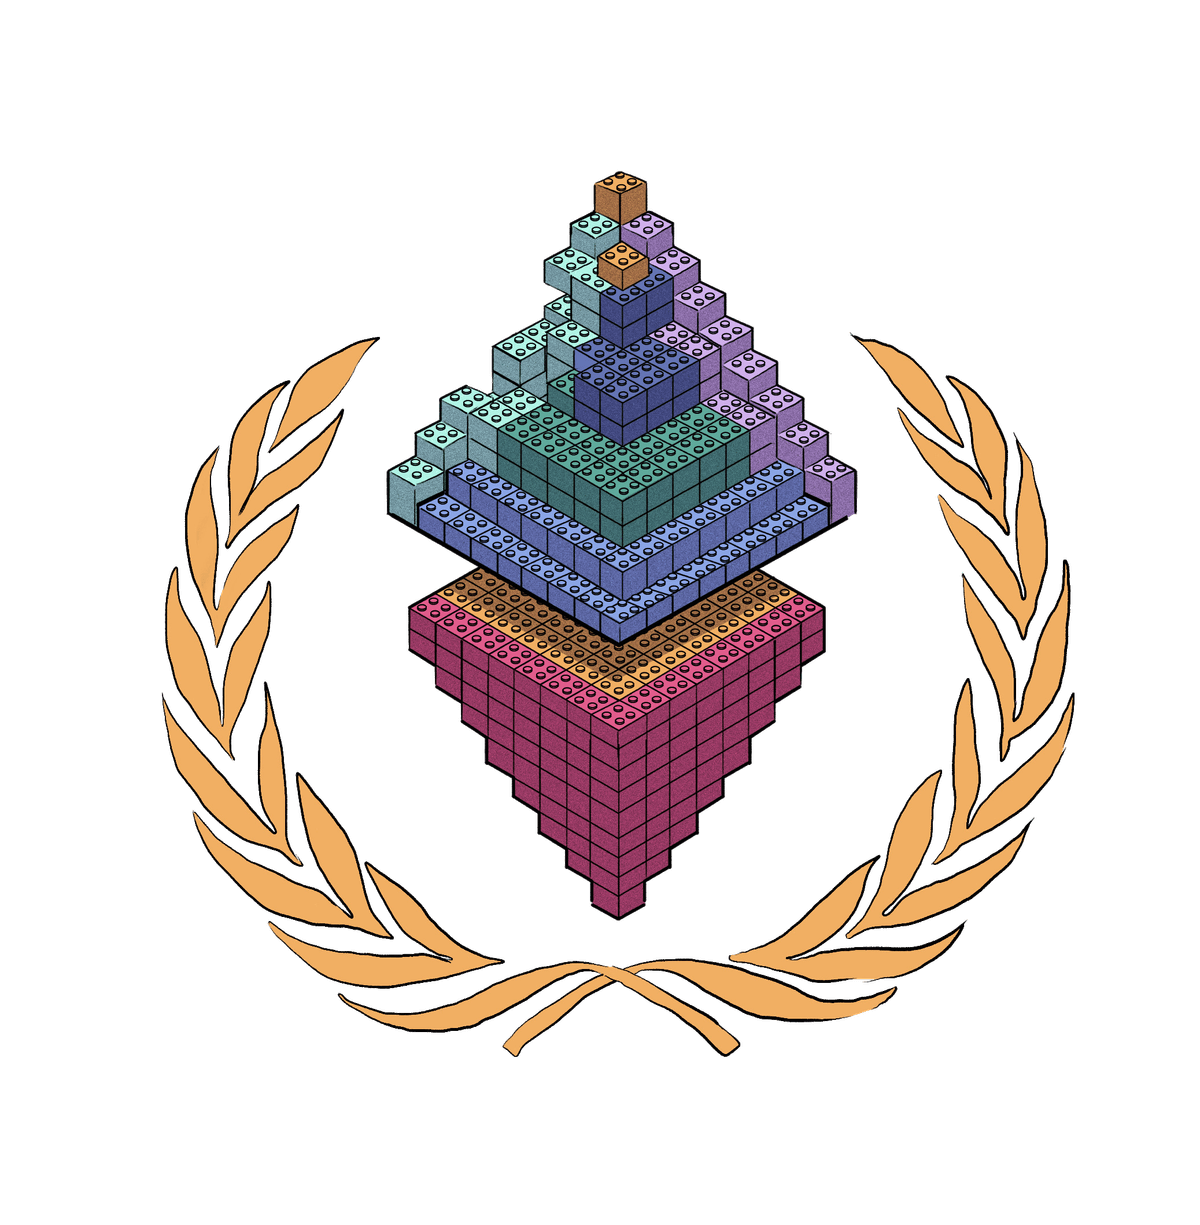 Isang logo ng Ethereum na gawa sa mga lego brick.